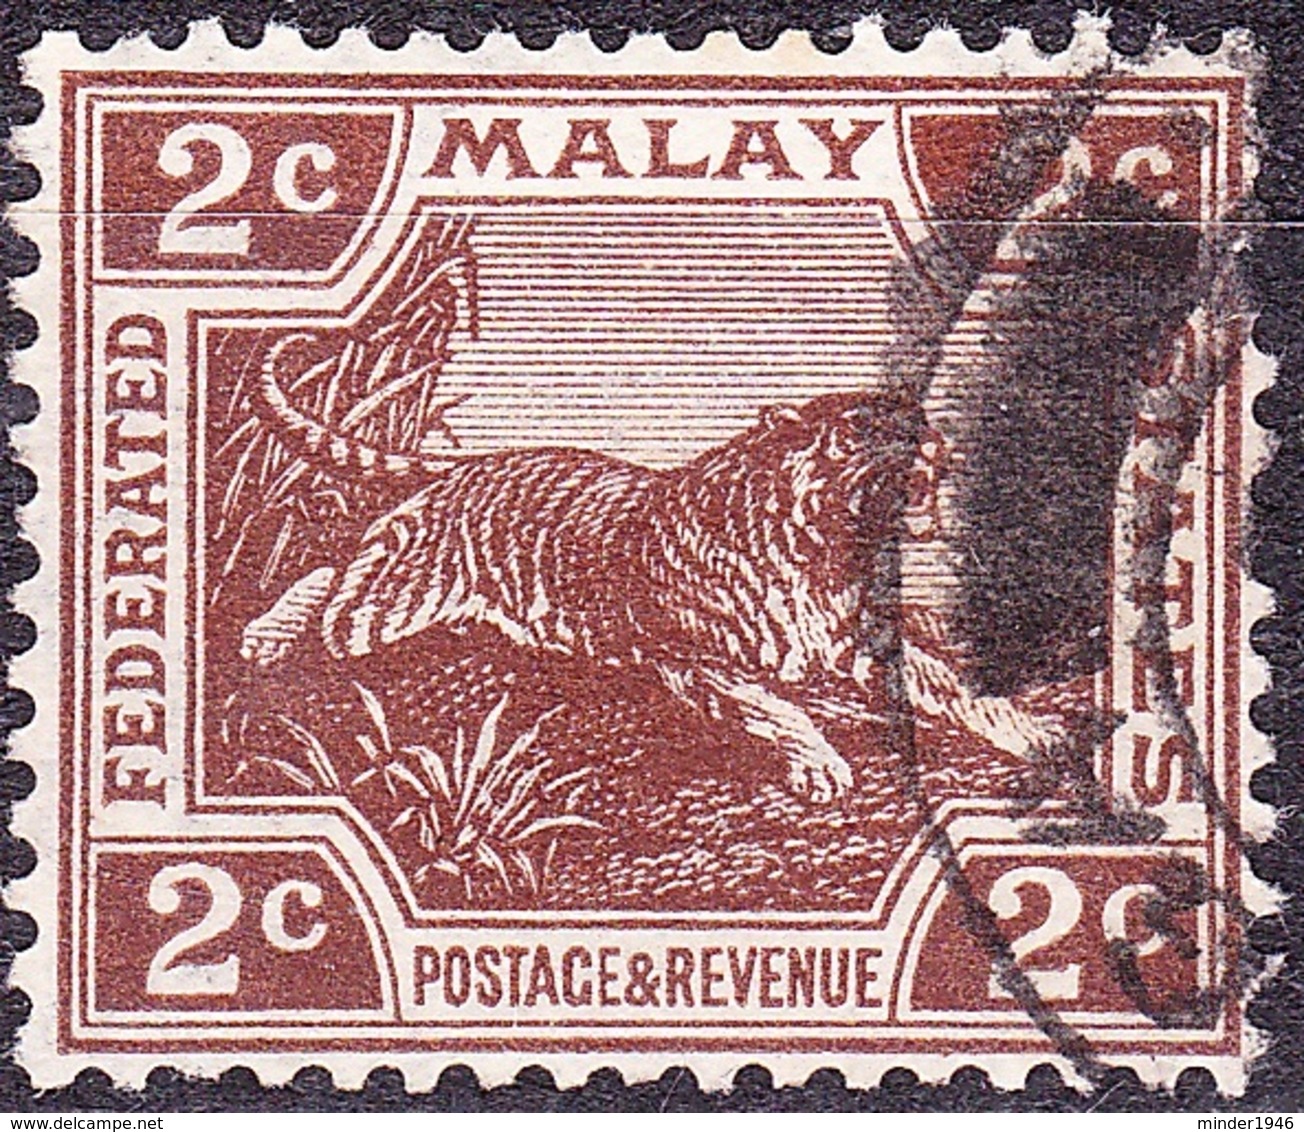 MALAYA 1925 2 Cents Brown SG54 Used - Malayan Postal Union